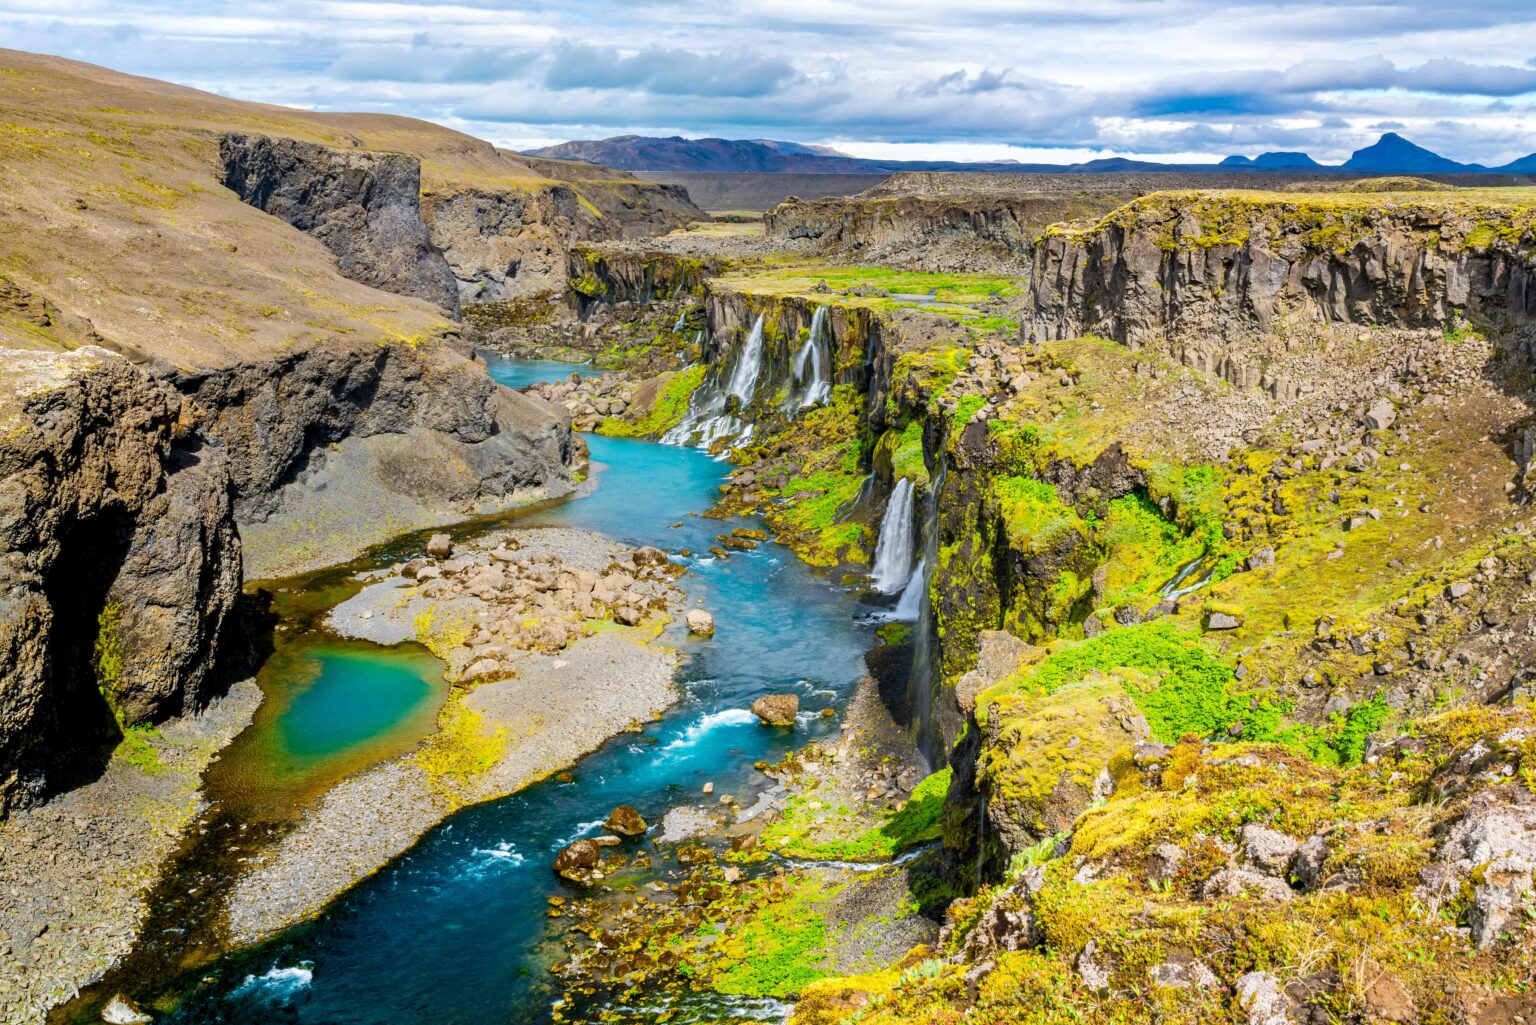 Múlagljúfur Canyon & Waterfalls | Most Spectacular Hidden Treasure in ...